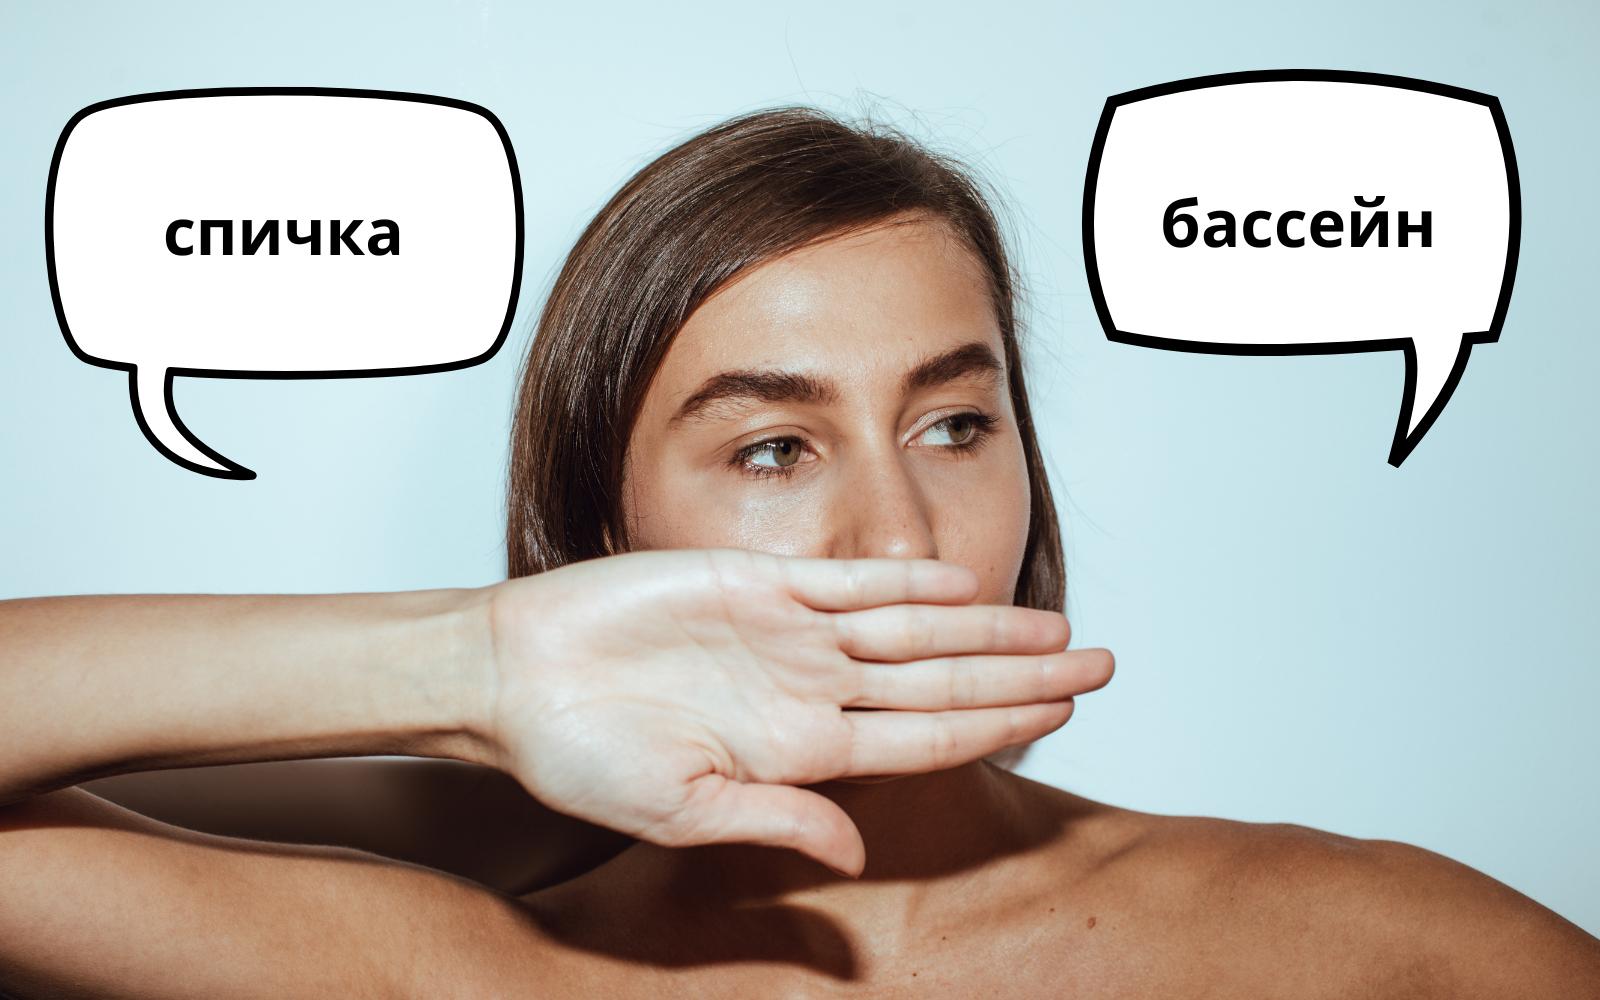 8 слов в русском языке, которые могут оскорбить иностранцев